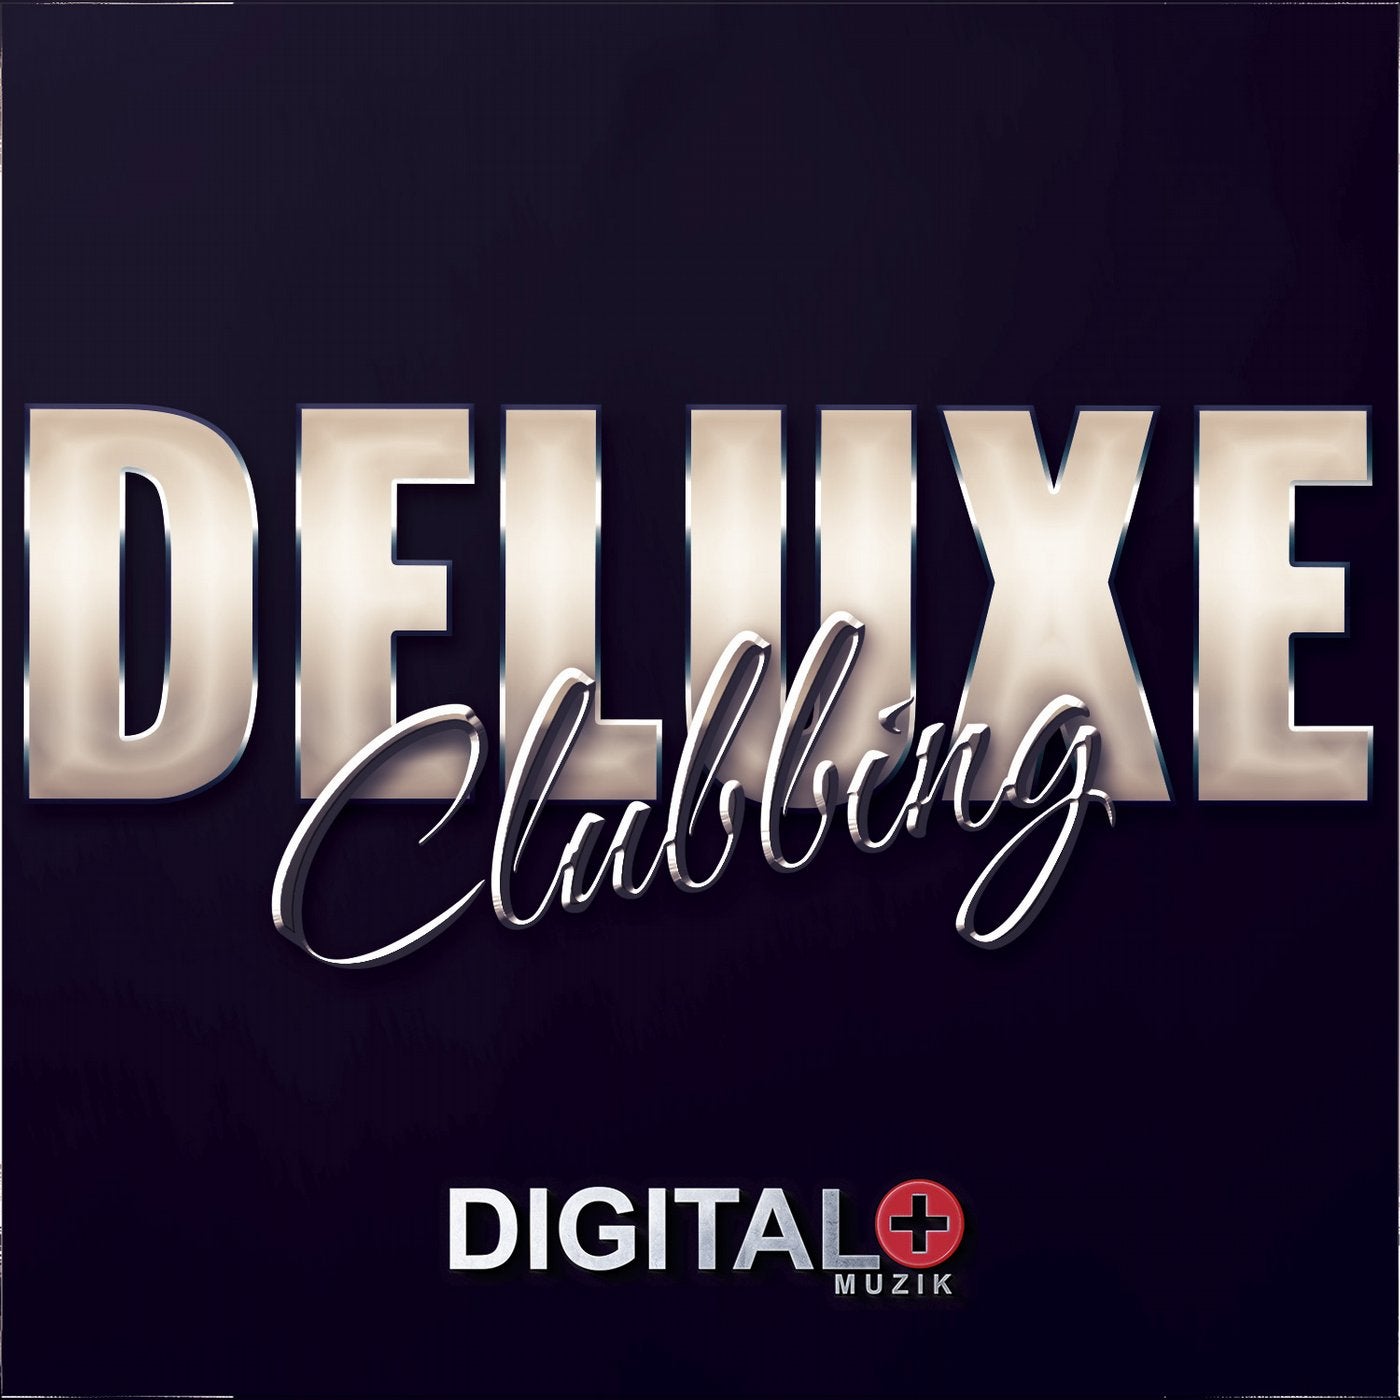 Deluxe Clubbing 06